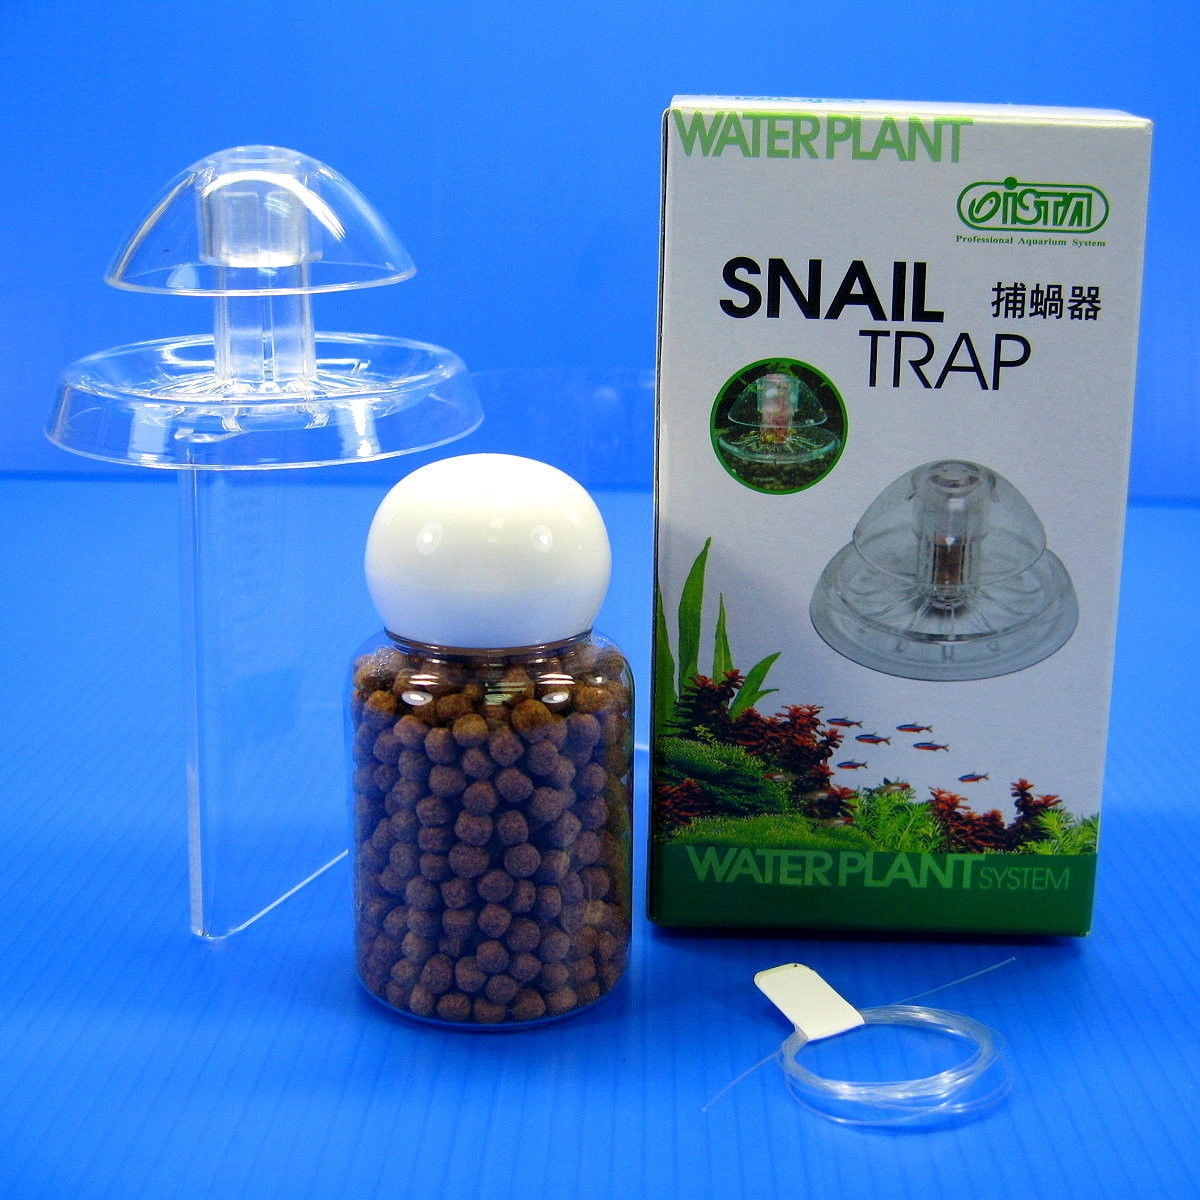 Festnight Plastic Clear Snail Trap Free Bait for Aquarium Fish Tank Plants Planarian Leech Catch Nature Cleaner S/L Optional